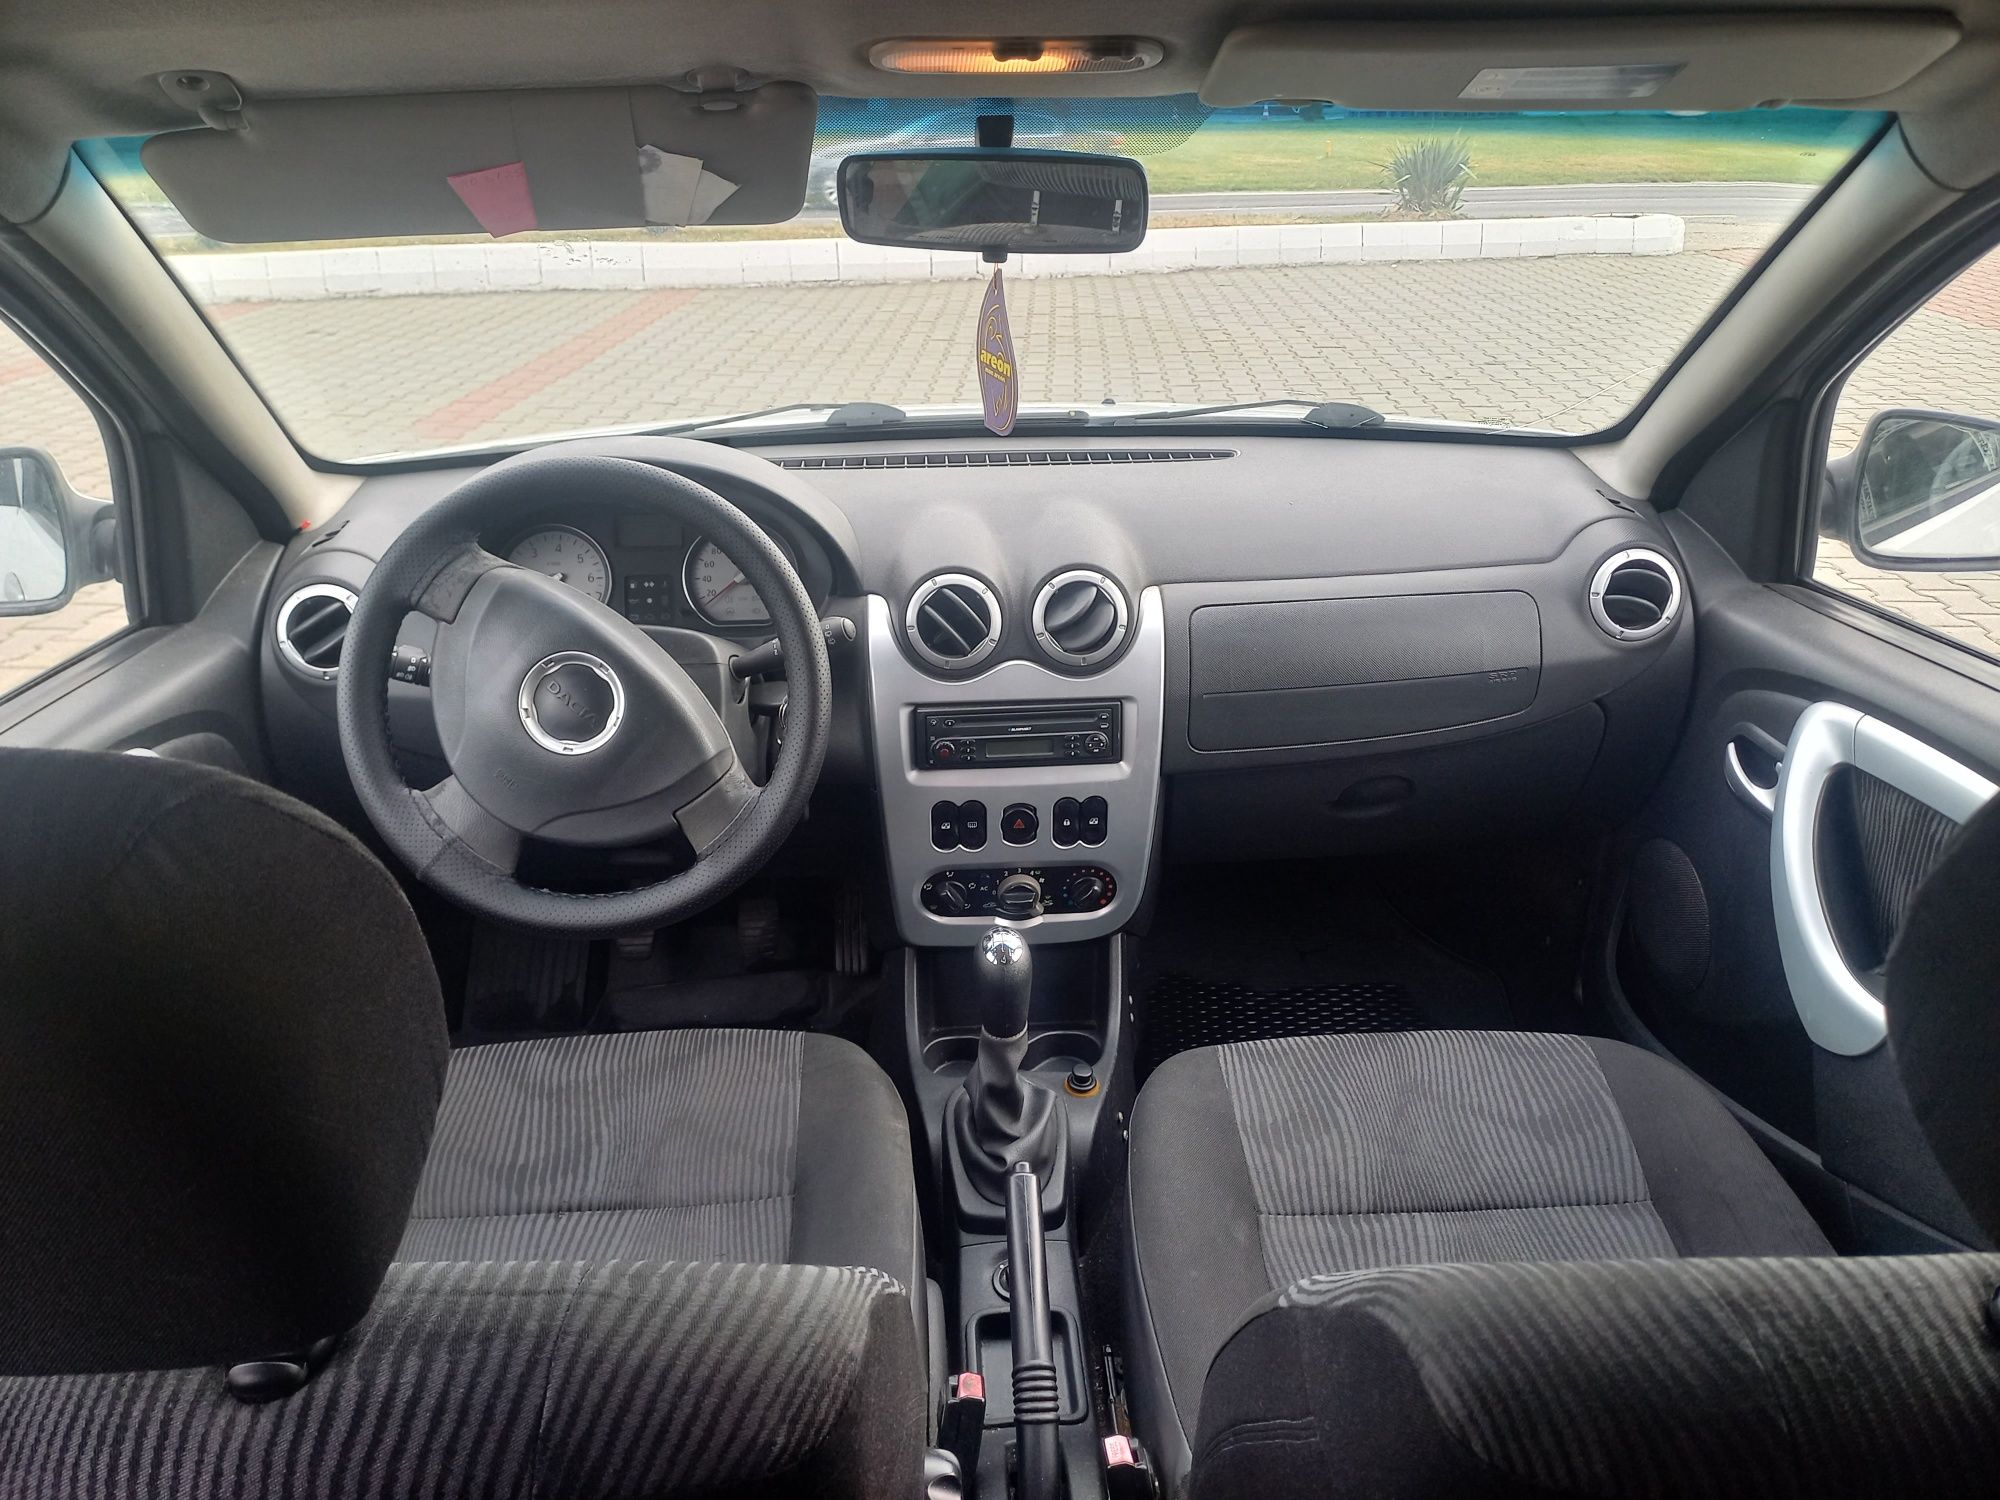 Dacia Sandero 1.6 Mpi Full